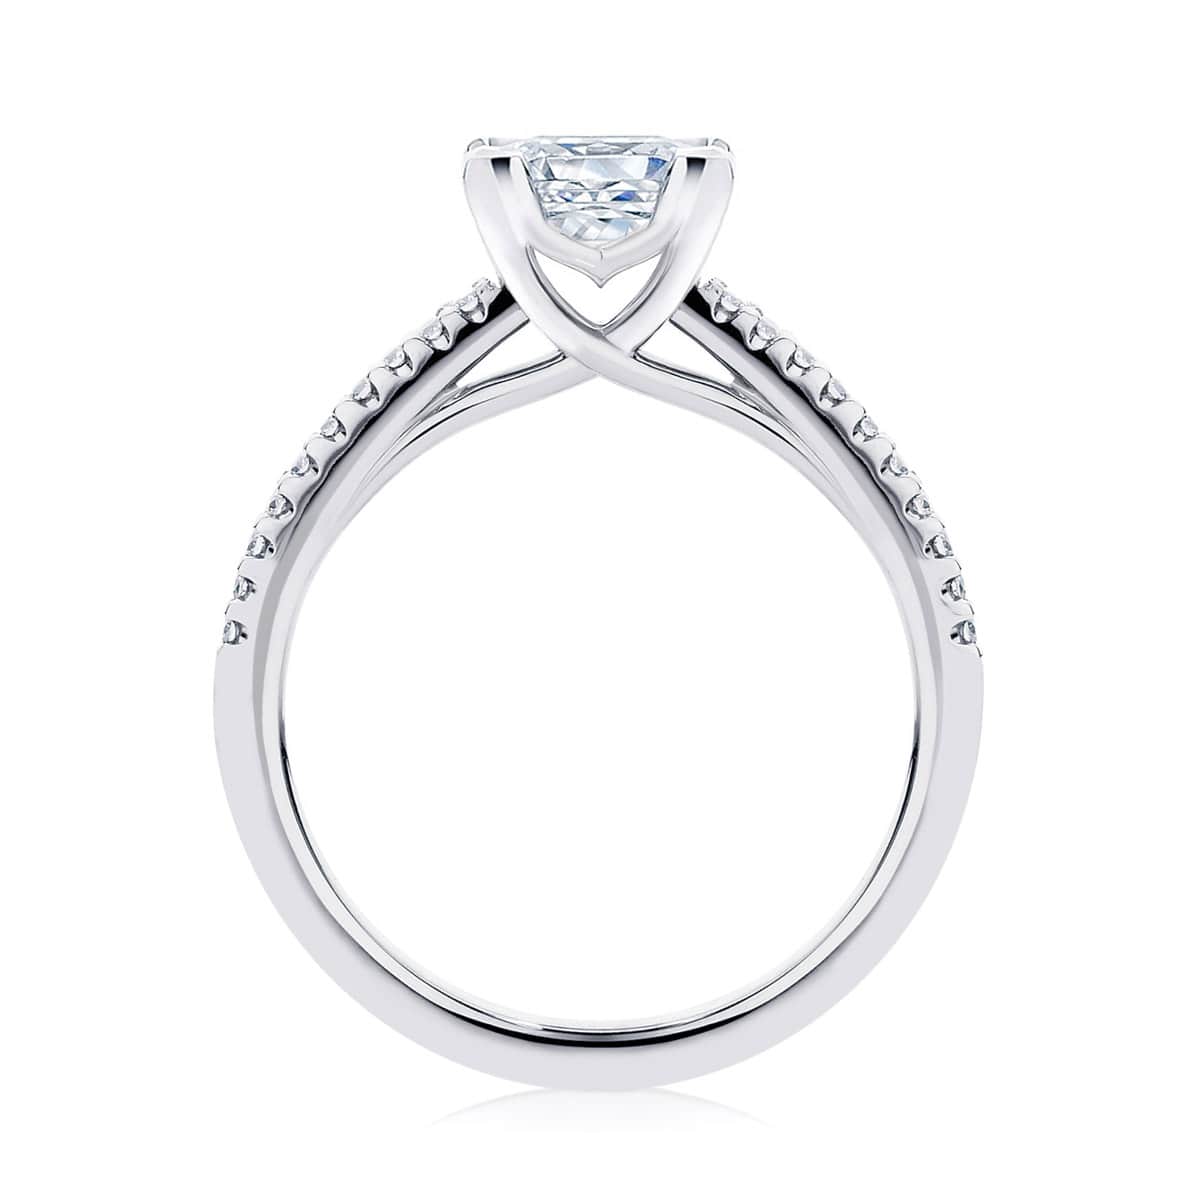 Princess Diamond with Side Stones Ring in Platinum | Aurelia (Princess)